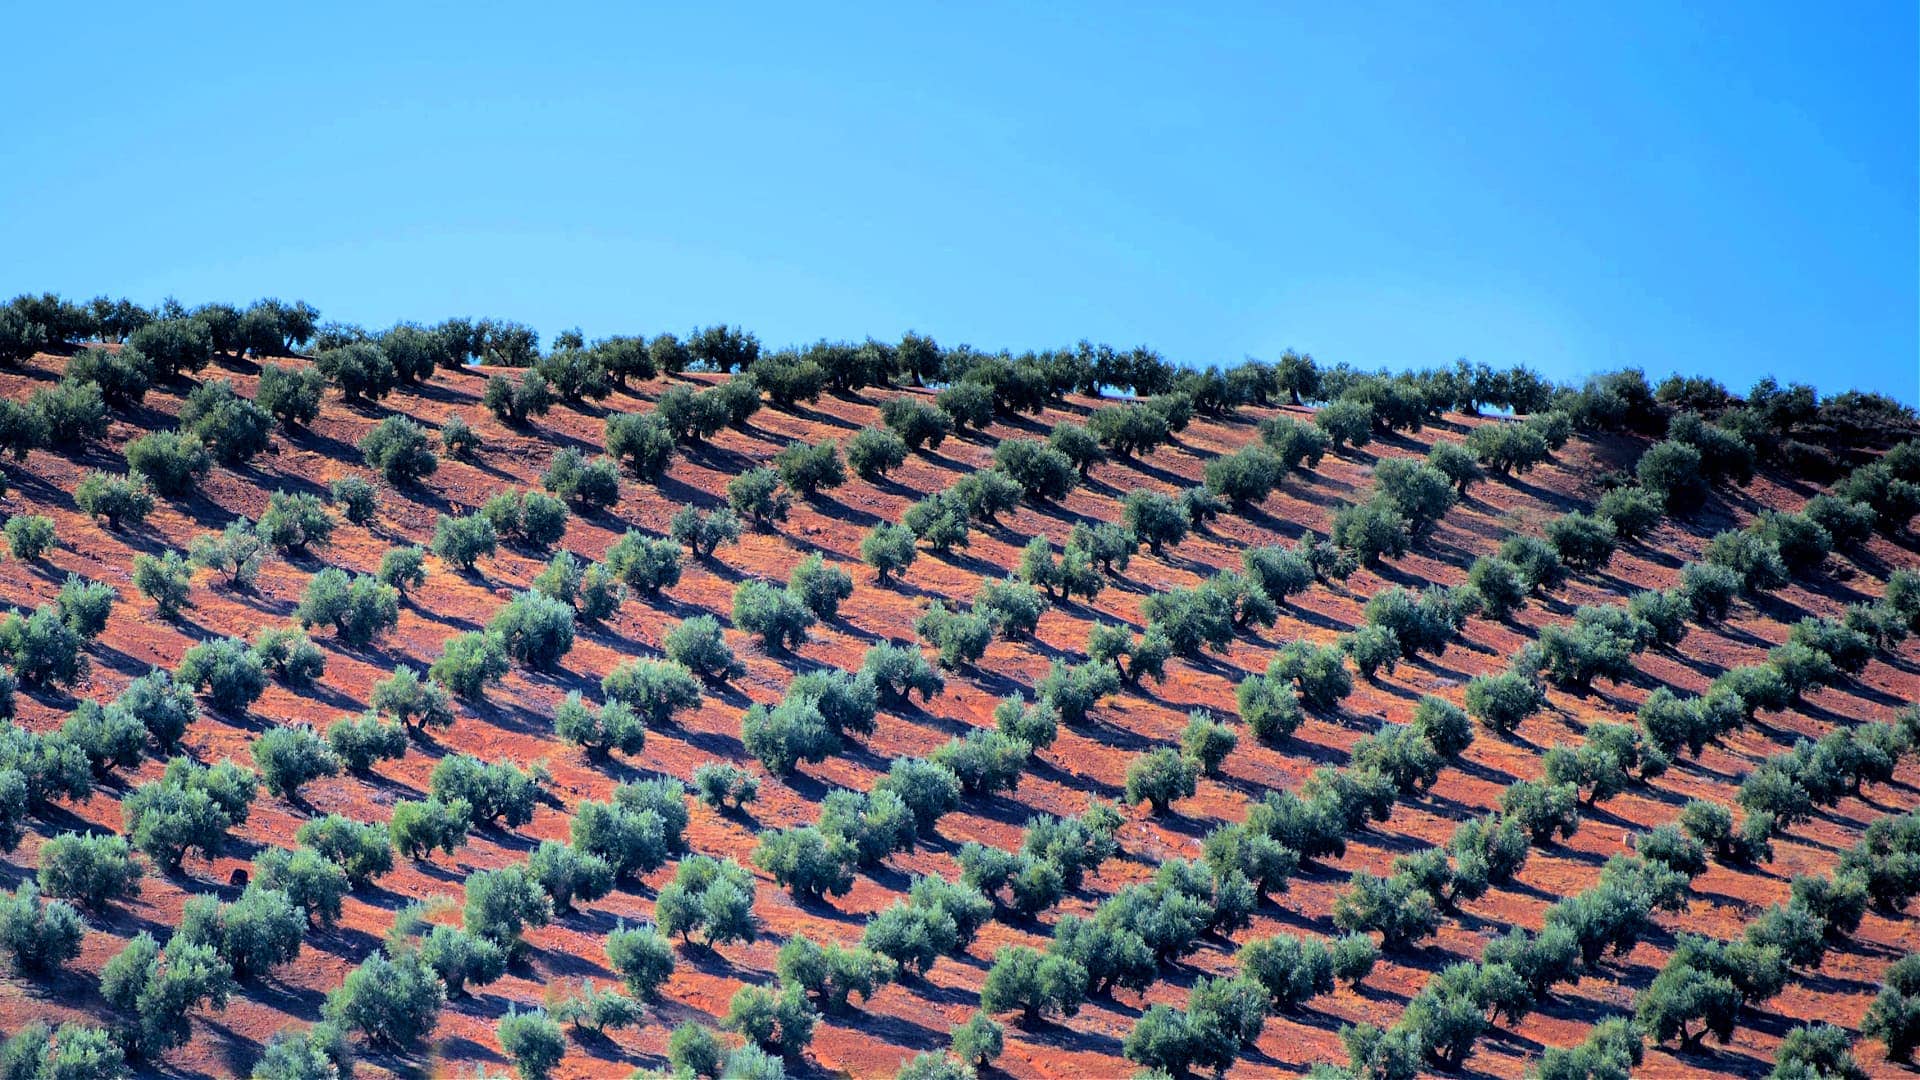 weltproduktion-wie-intensiv-landwirtschaft-und-olivenanbau-auswirkungen-bodengesundheit-olivenol-zeiten